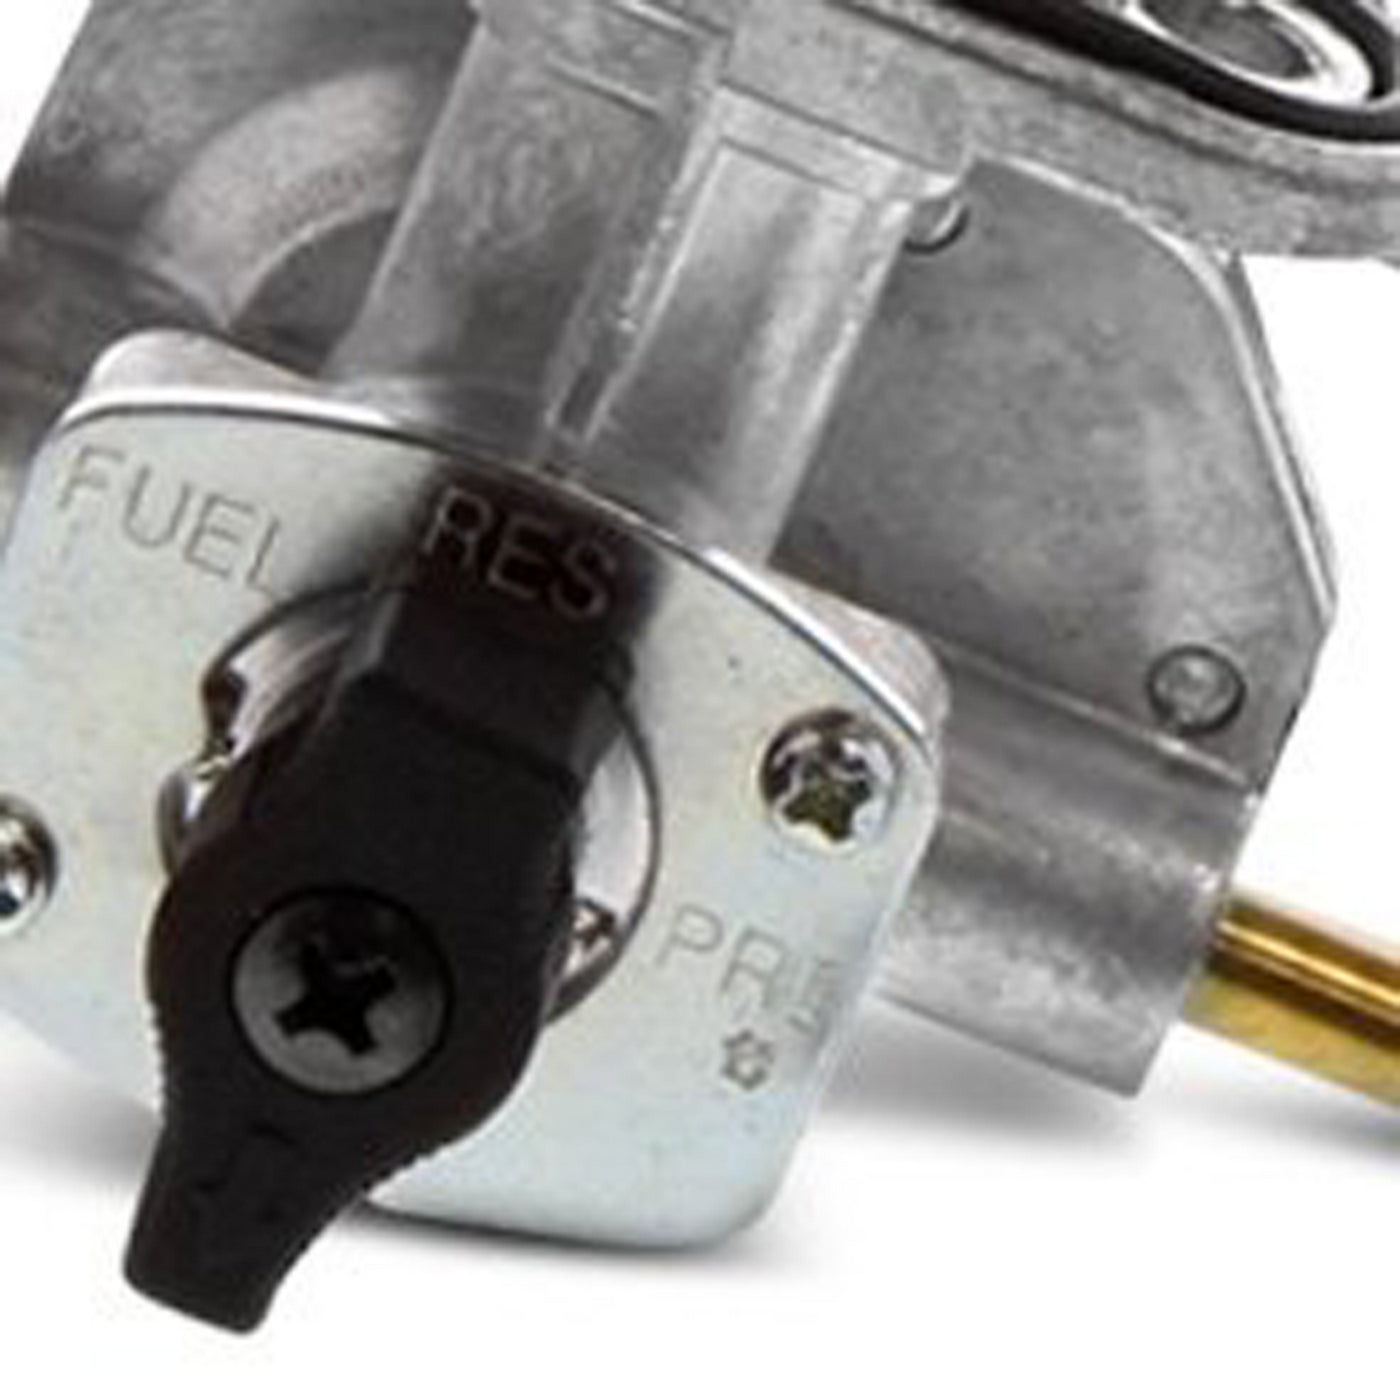 Fuel Star FS101-0148 Fuel Valve Kit #FS101-0148